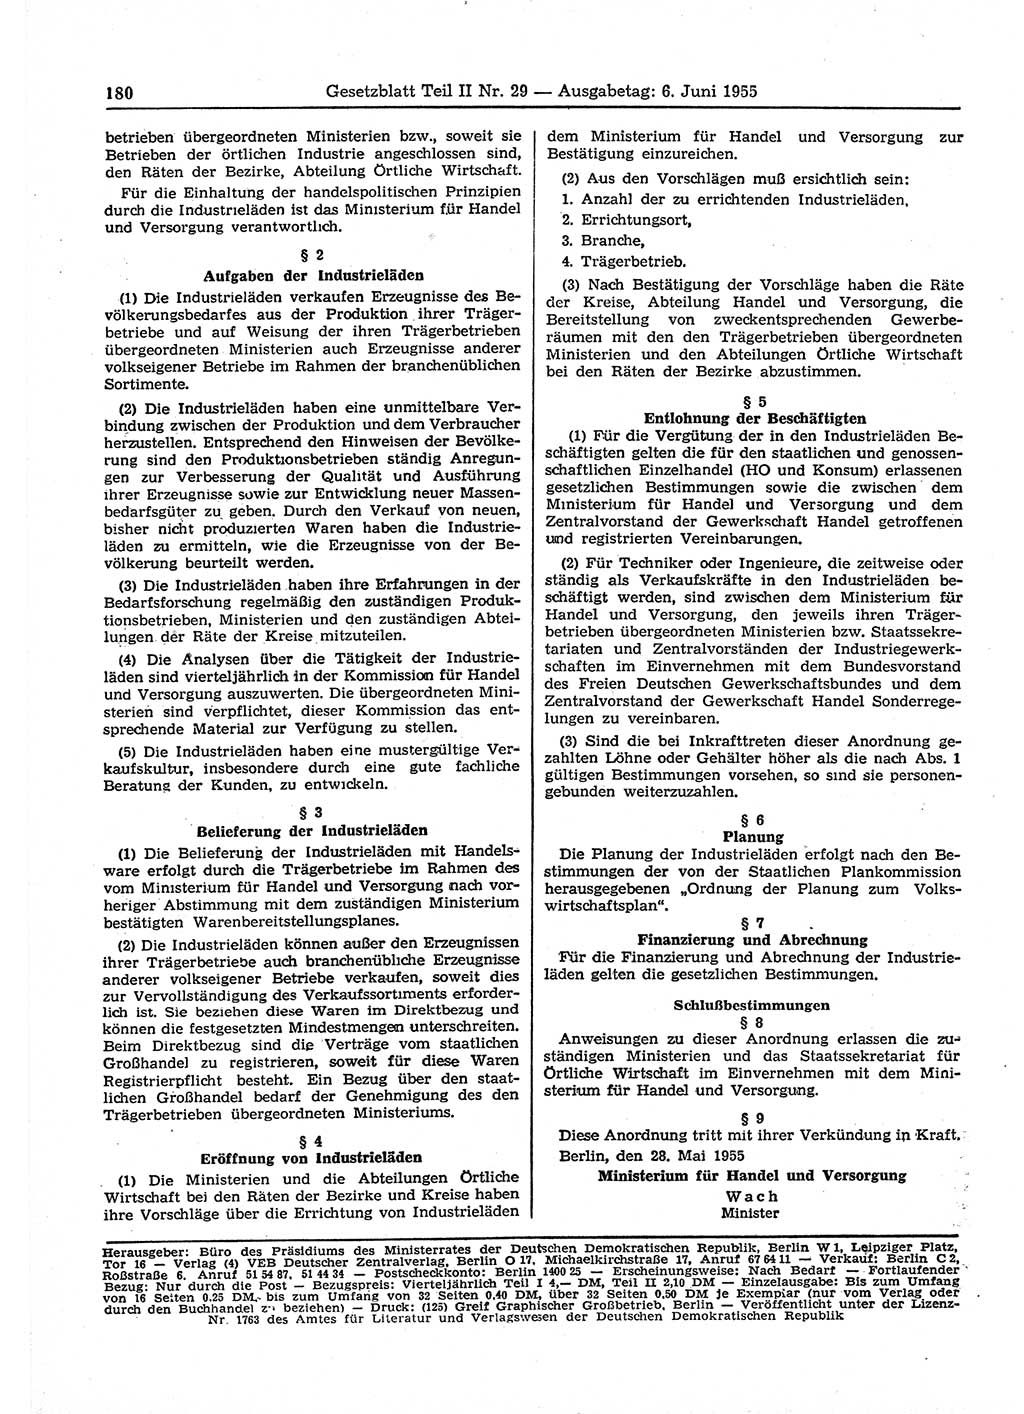 Gesetzblatt (GBl.) der Deutschen Demokratischen Republik (DDR) Teil ⅠⅠ 1955, Seite 180 (GBl. DDR ⅠⅠ 1955, S. 180)